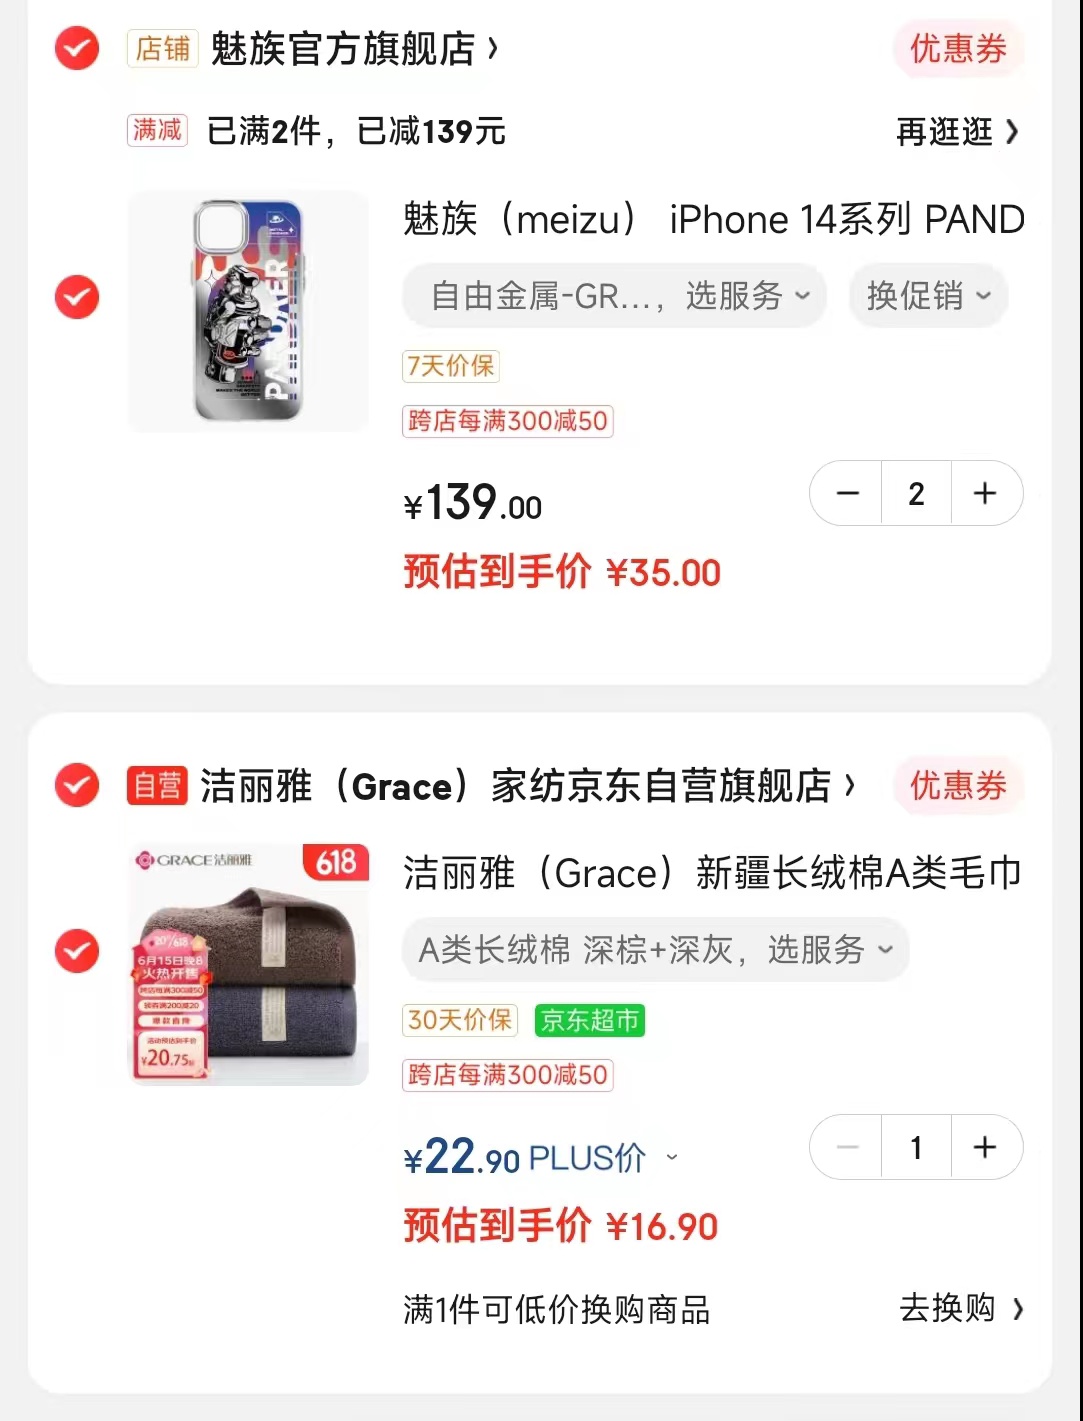 日常 139 元：魅族 iPhone 14 系列 PANDAER 妙磁壳 35 元探底